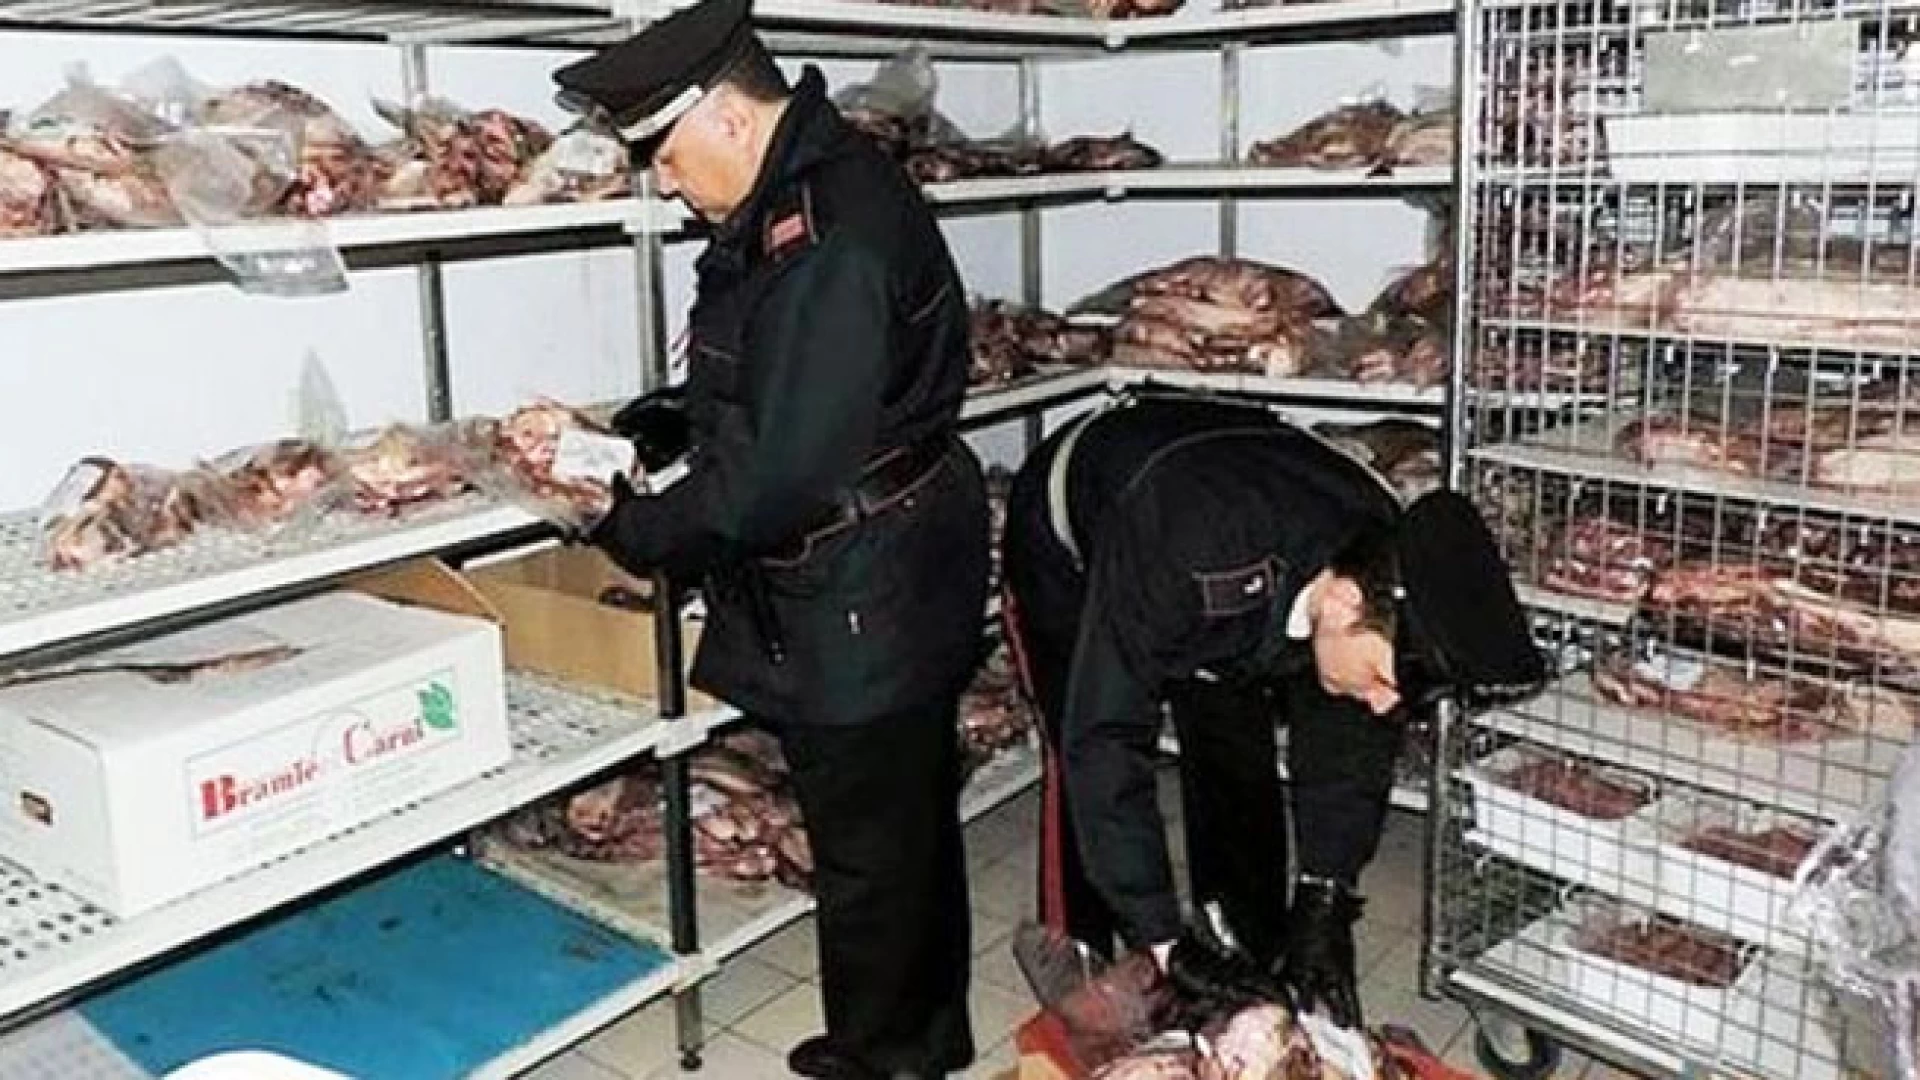 Isernia: Salute dei cittadini, scattano i controlli dei Carabinieri, sotto sequestro circa mezzo quintale di carne in pessimo stato di conservazione.